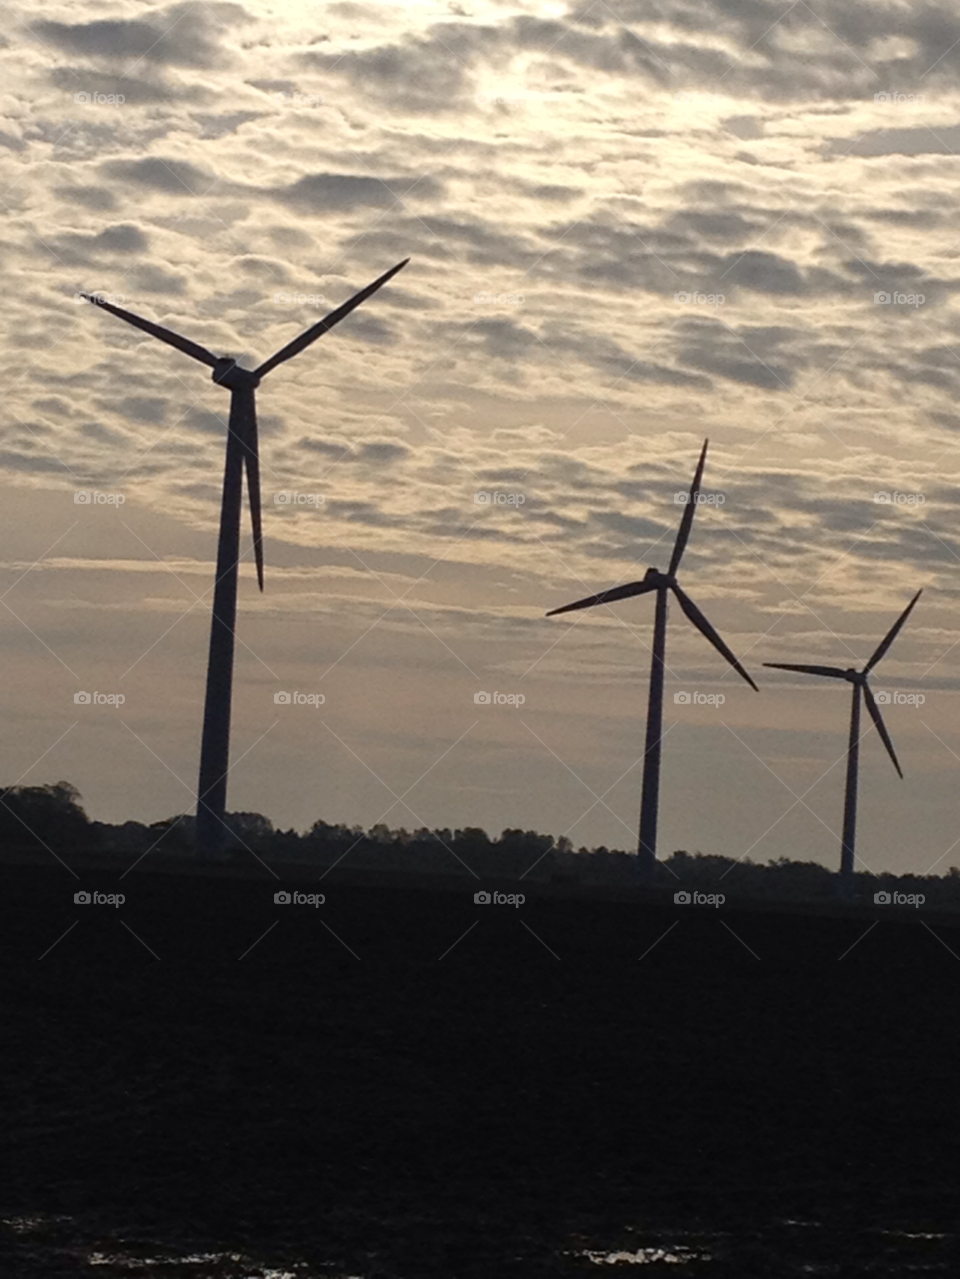 landscape sky silhouette wind turbines by liselott